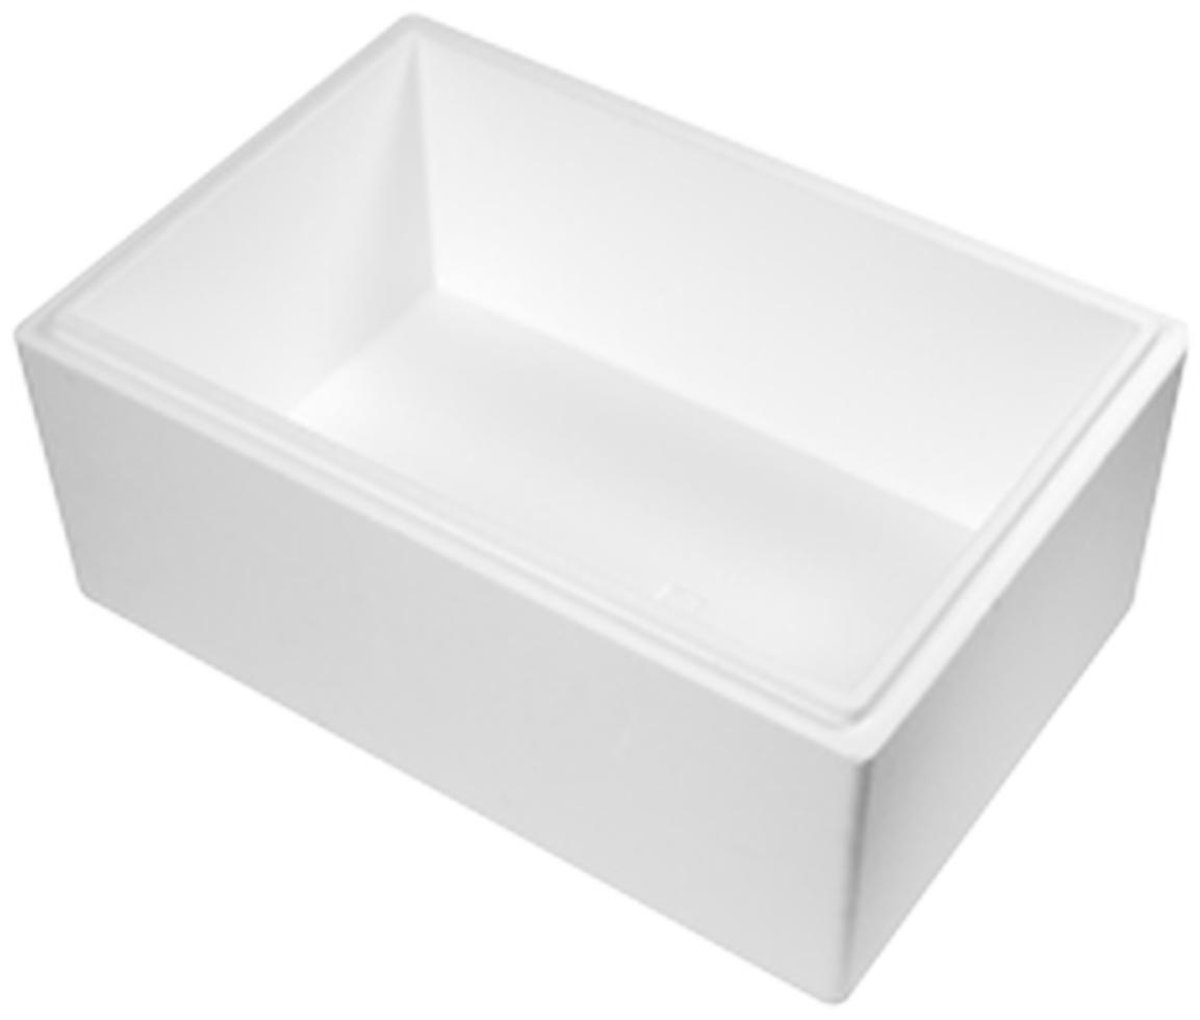 Shetland toewijding Veeg Thermobox 30 Liter (Met koelelementen) - Isolatie Doos - Droogijs Box -  Tempex doos - EPS - Koelbox - Duurzaam (Inclusief 3 Ice gel packs 400ml) |  Tweedehands | Boekenbalie